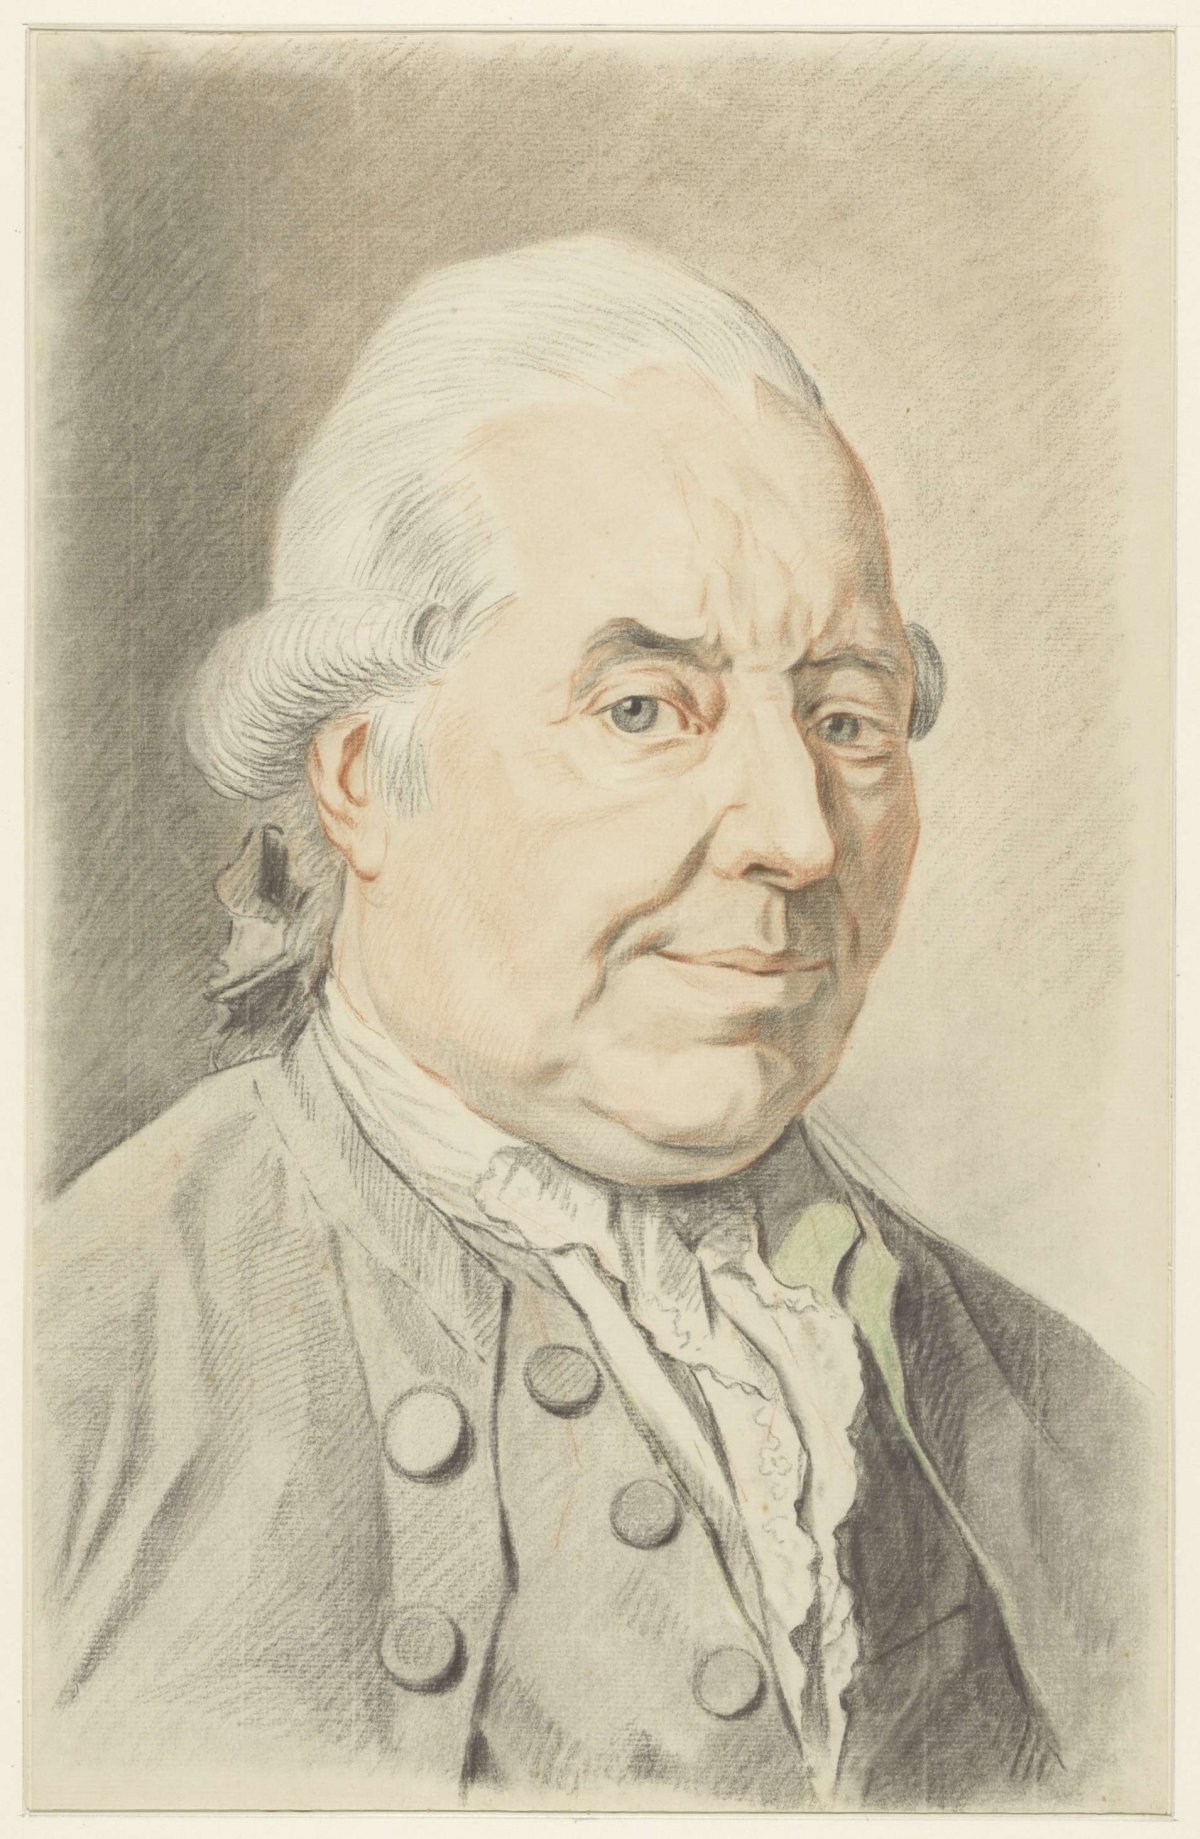 Self-portrait of Jacob Perkois, Jacob Perkois, 1766 - 1804